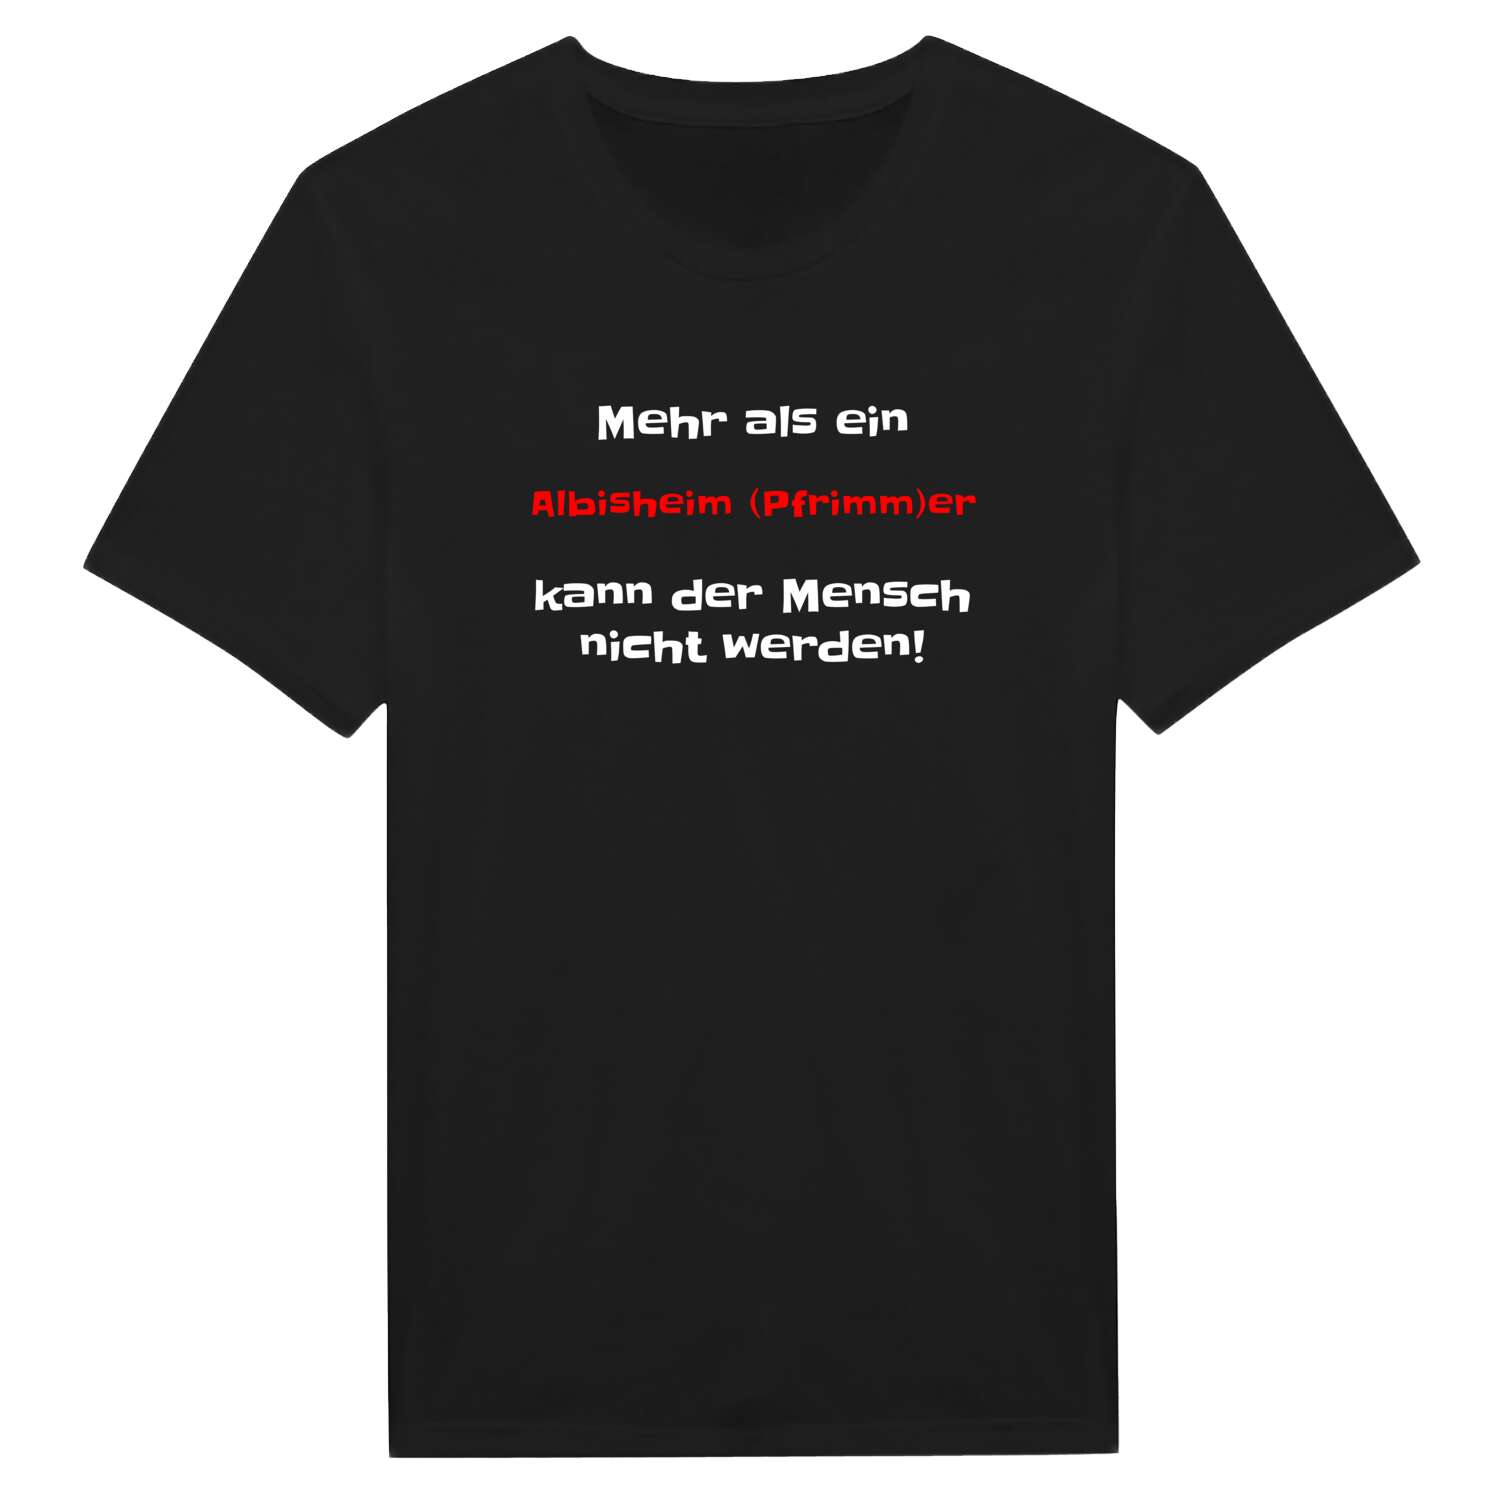 Albisheim (Pfrimm) T-Shirt »Mehr als ein«